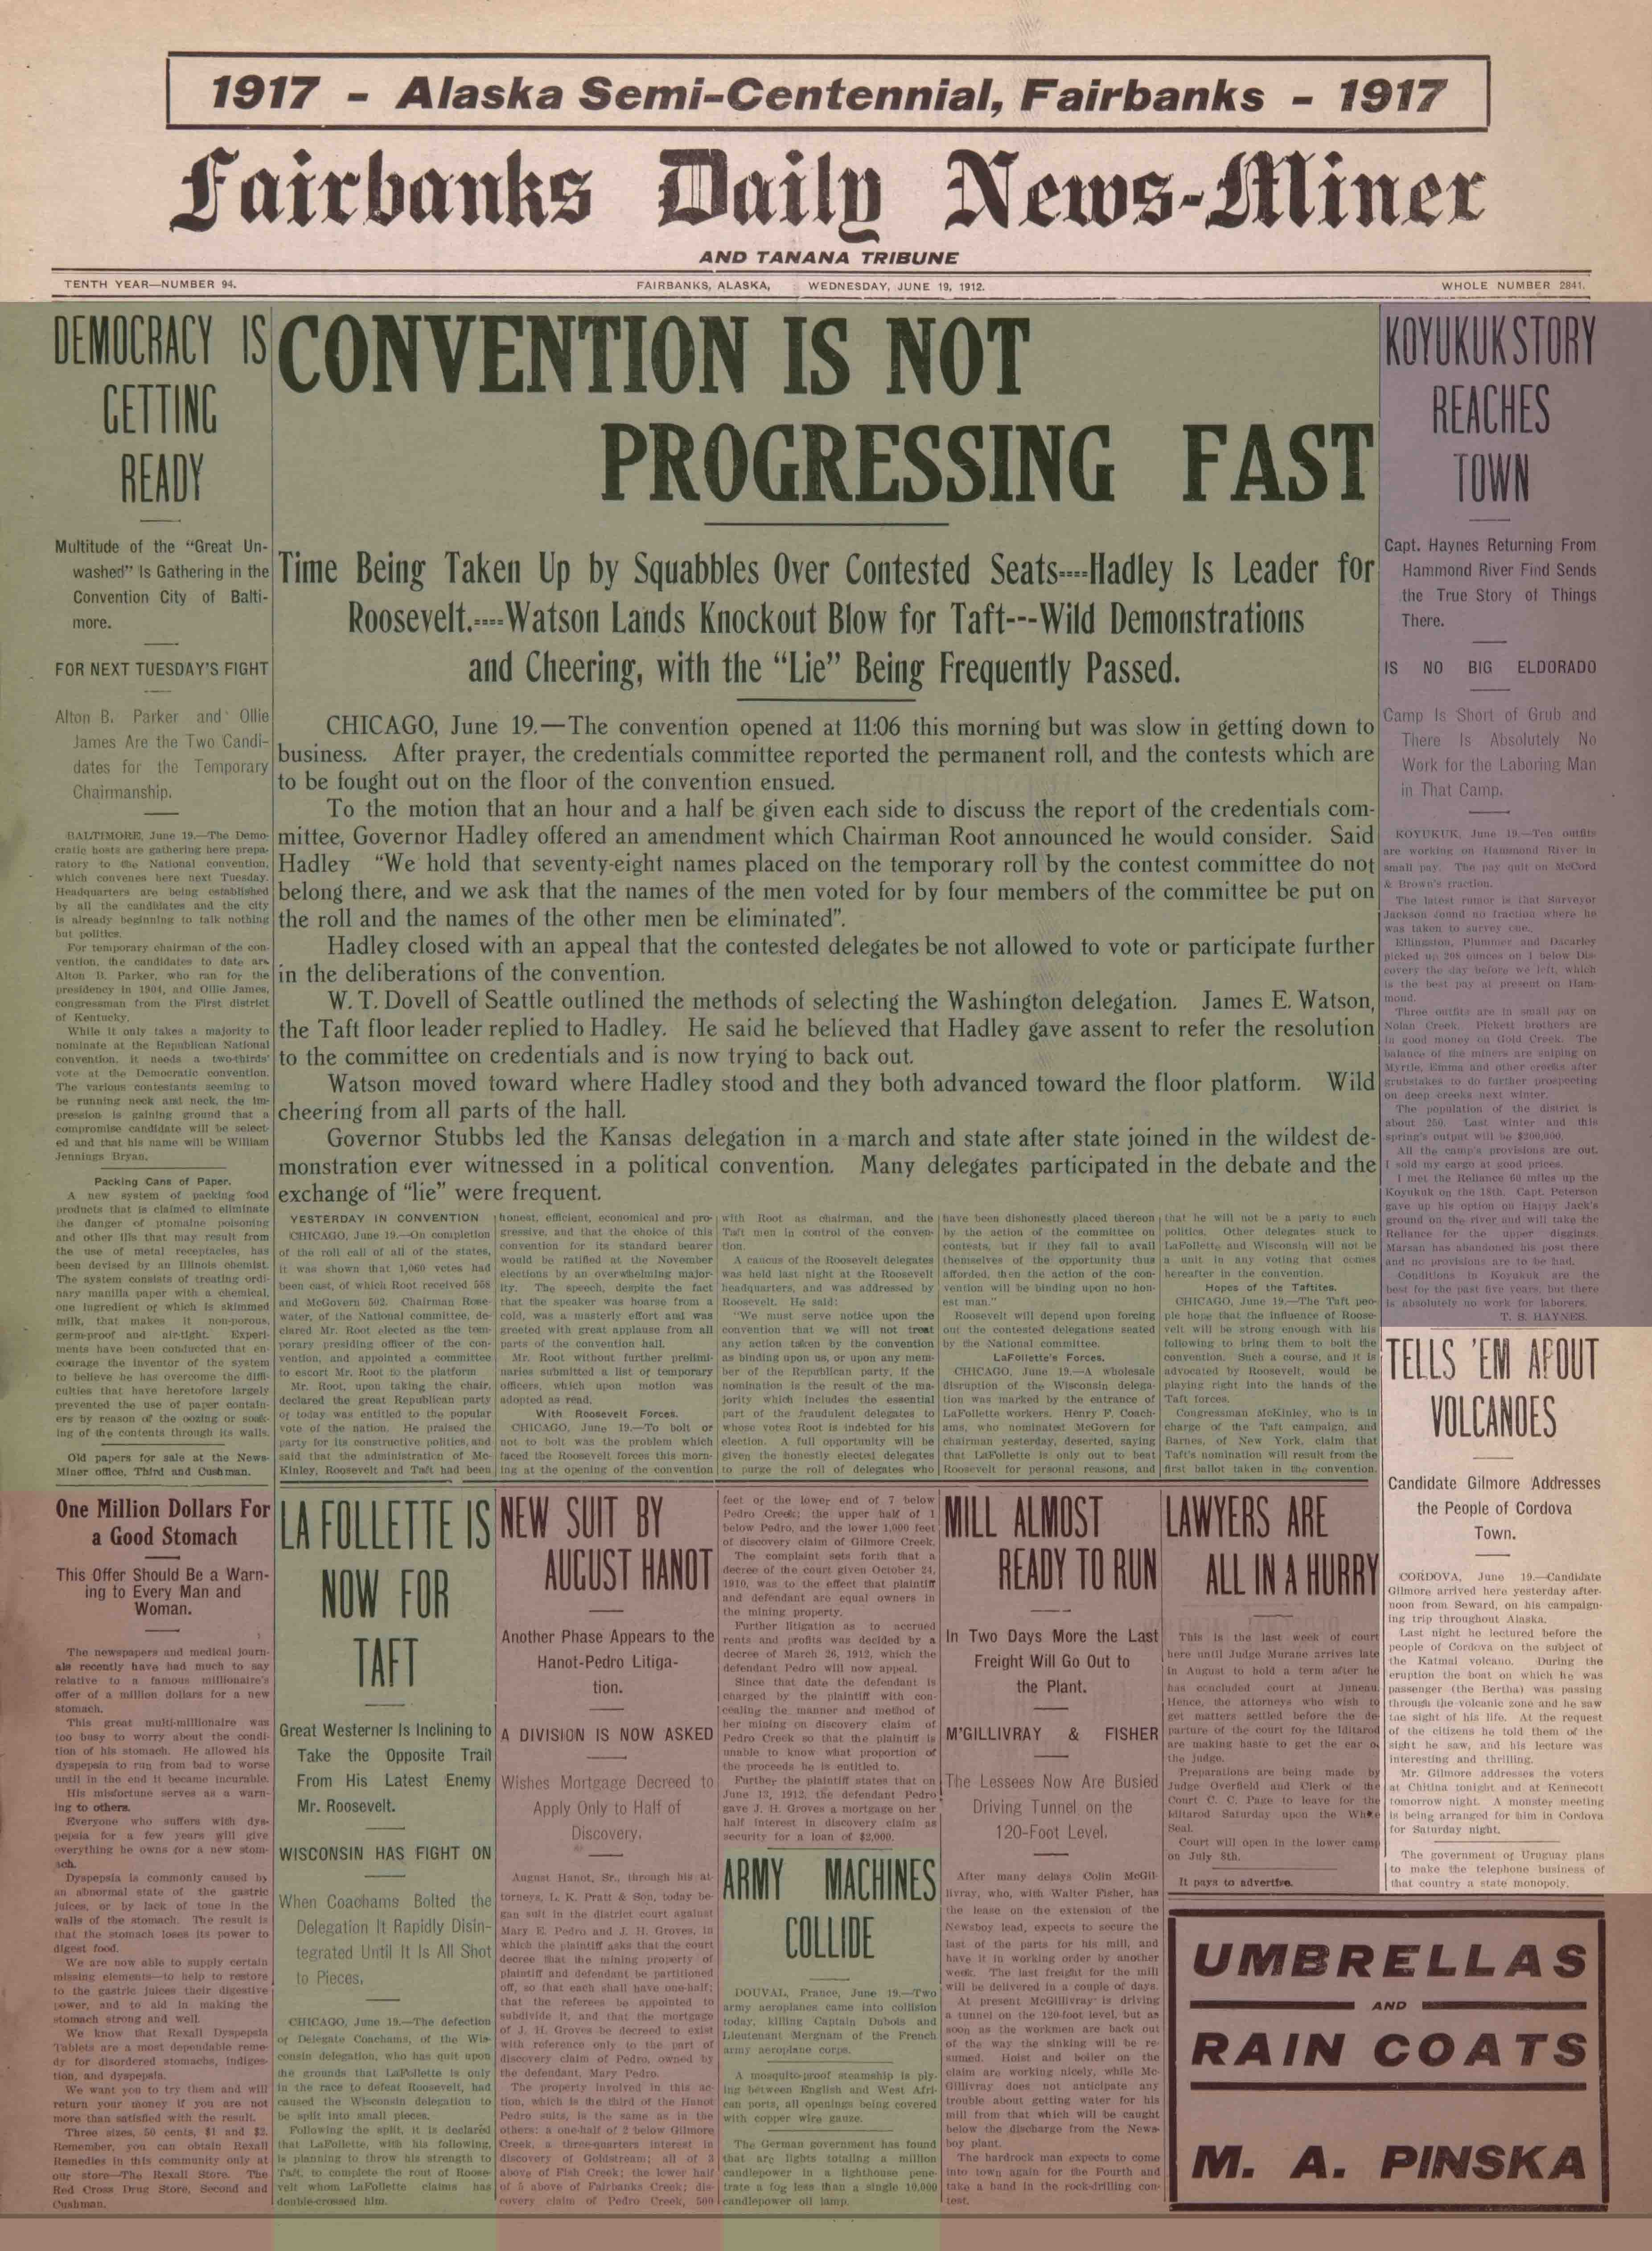 1912 June 19, Fairbanks Daily News-Miner (pg 1)